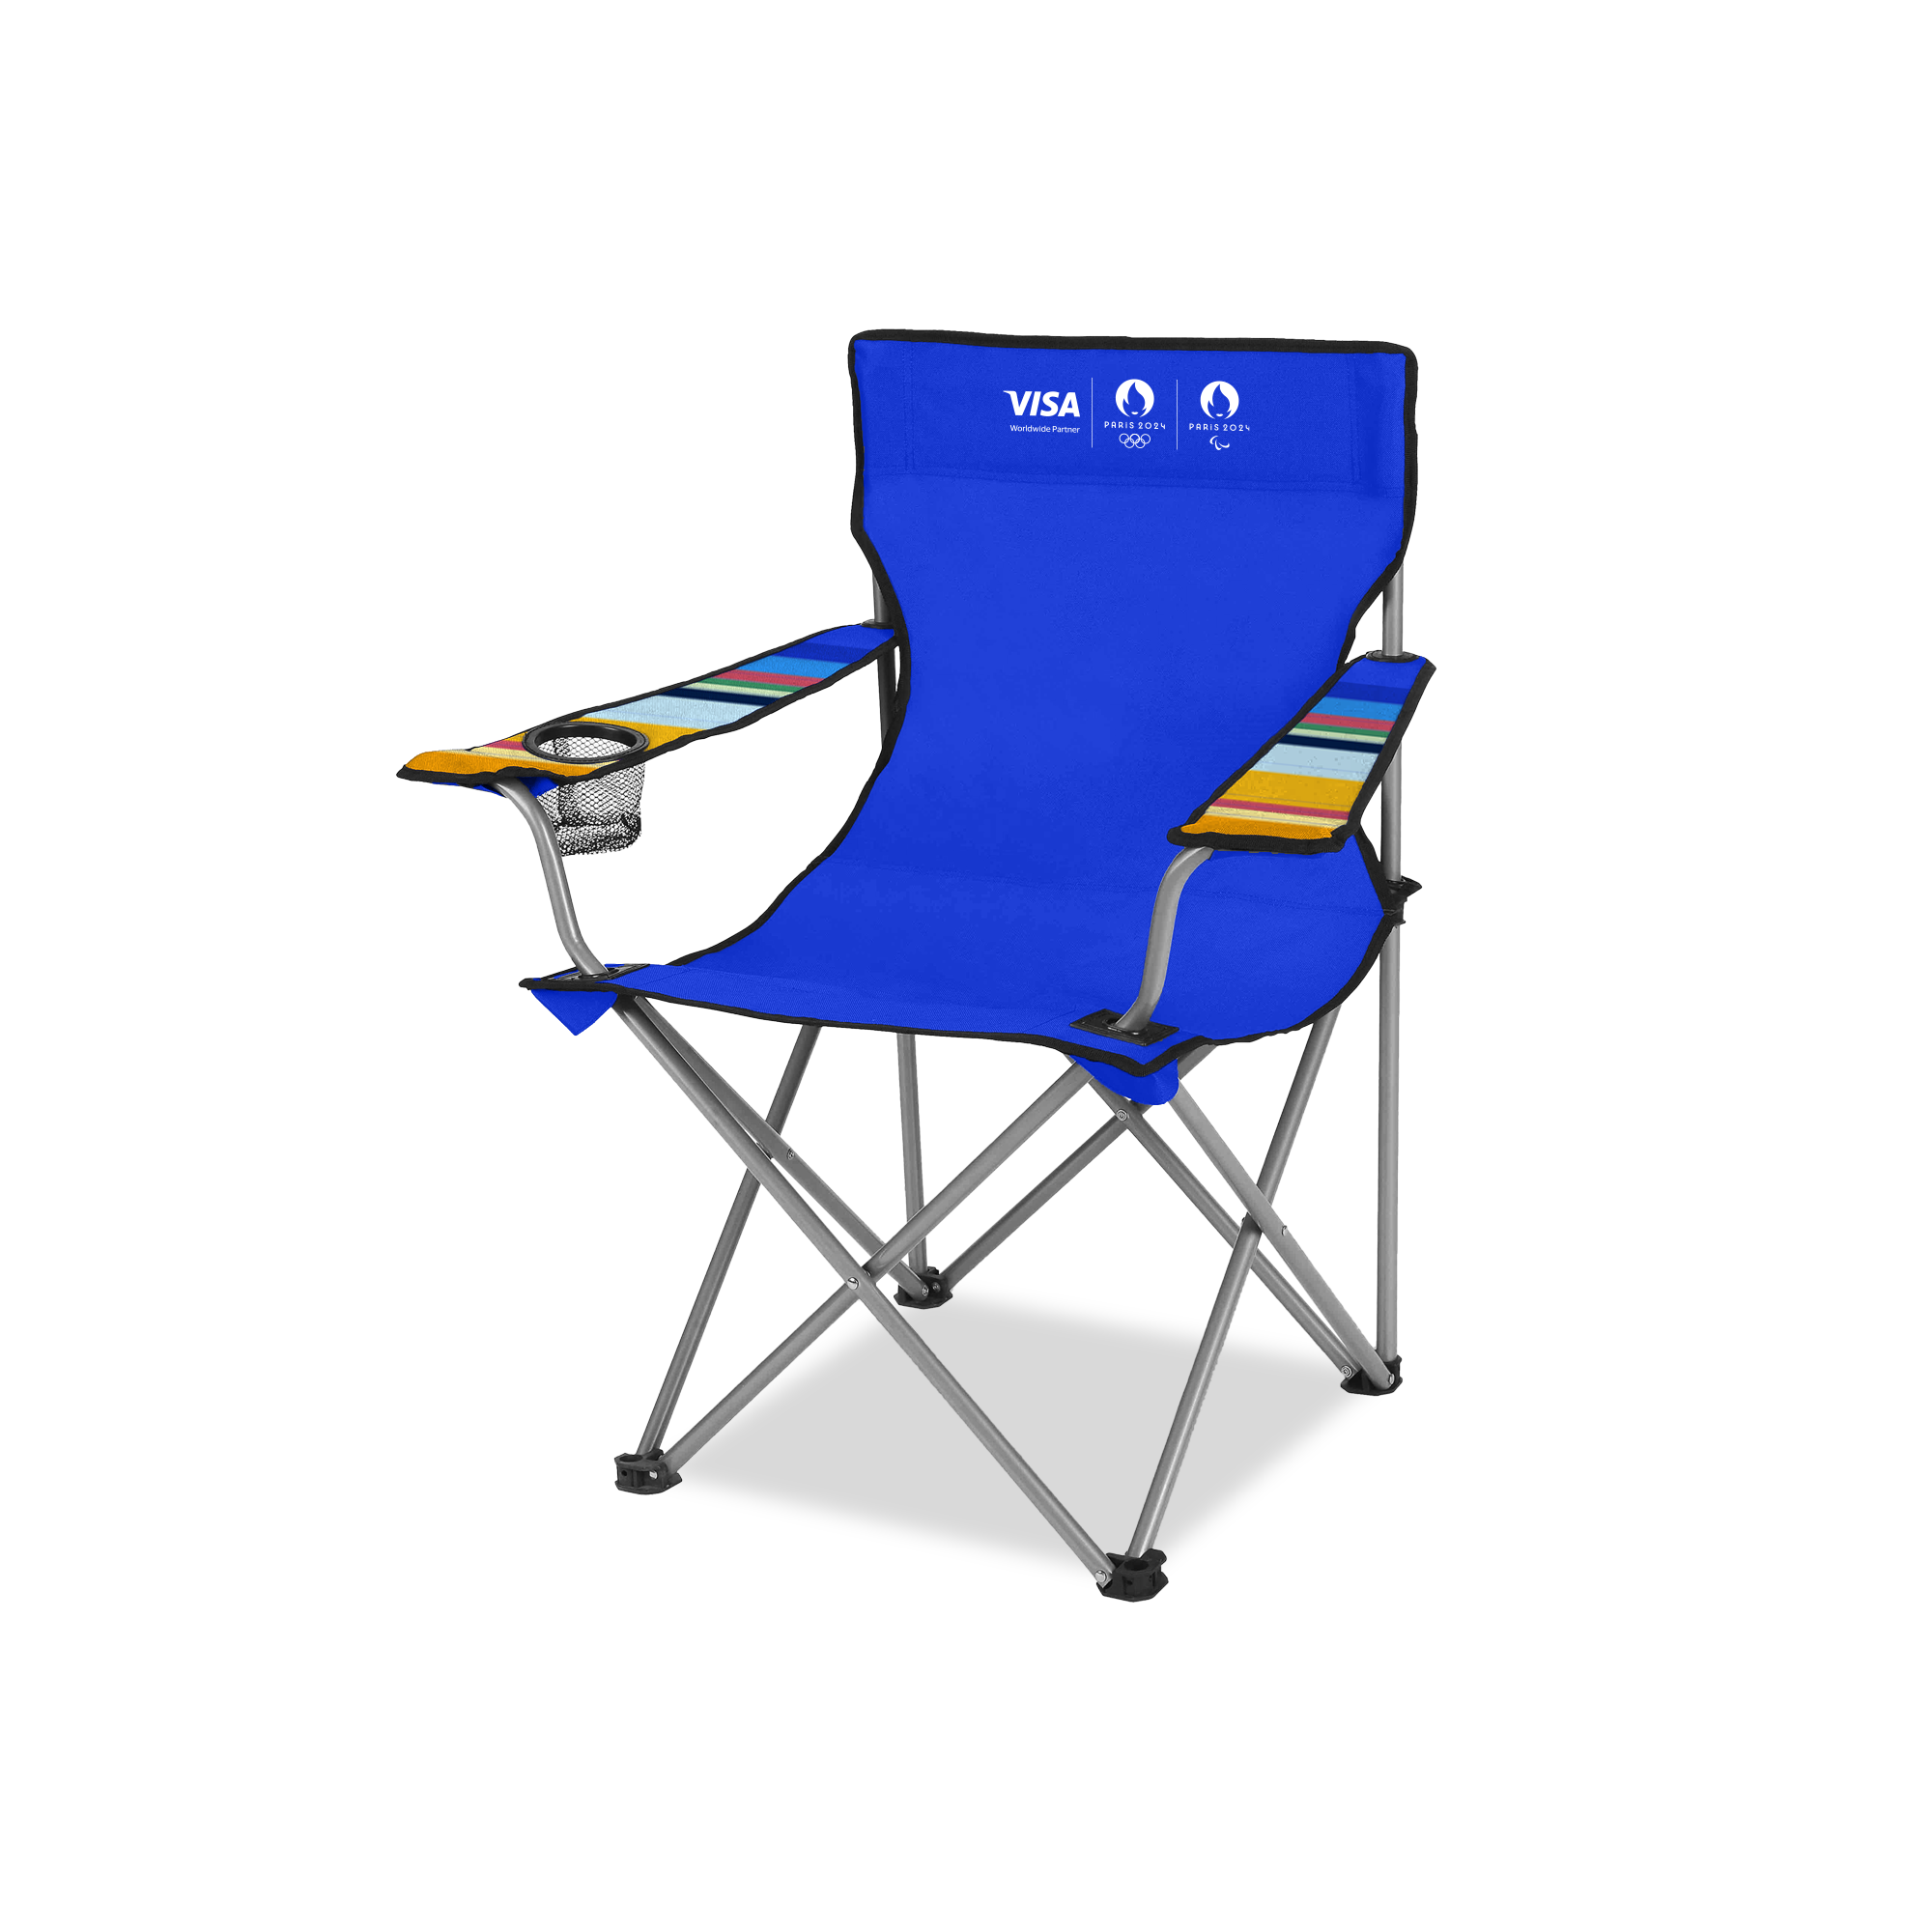 เก้าอี้ Camping Chair มูลค่า 2,000 บาท